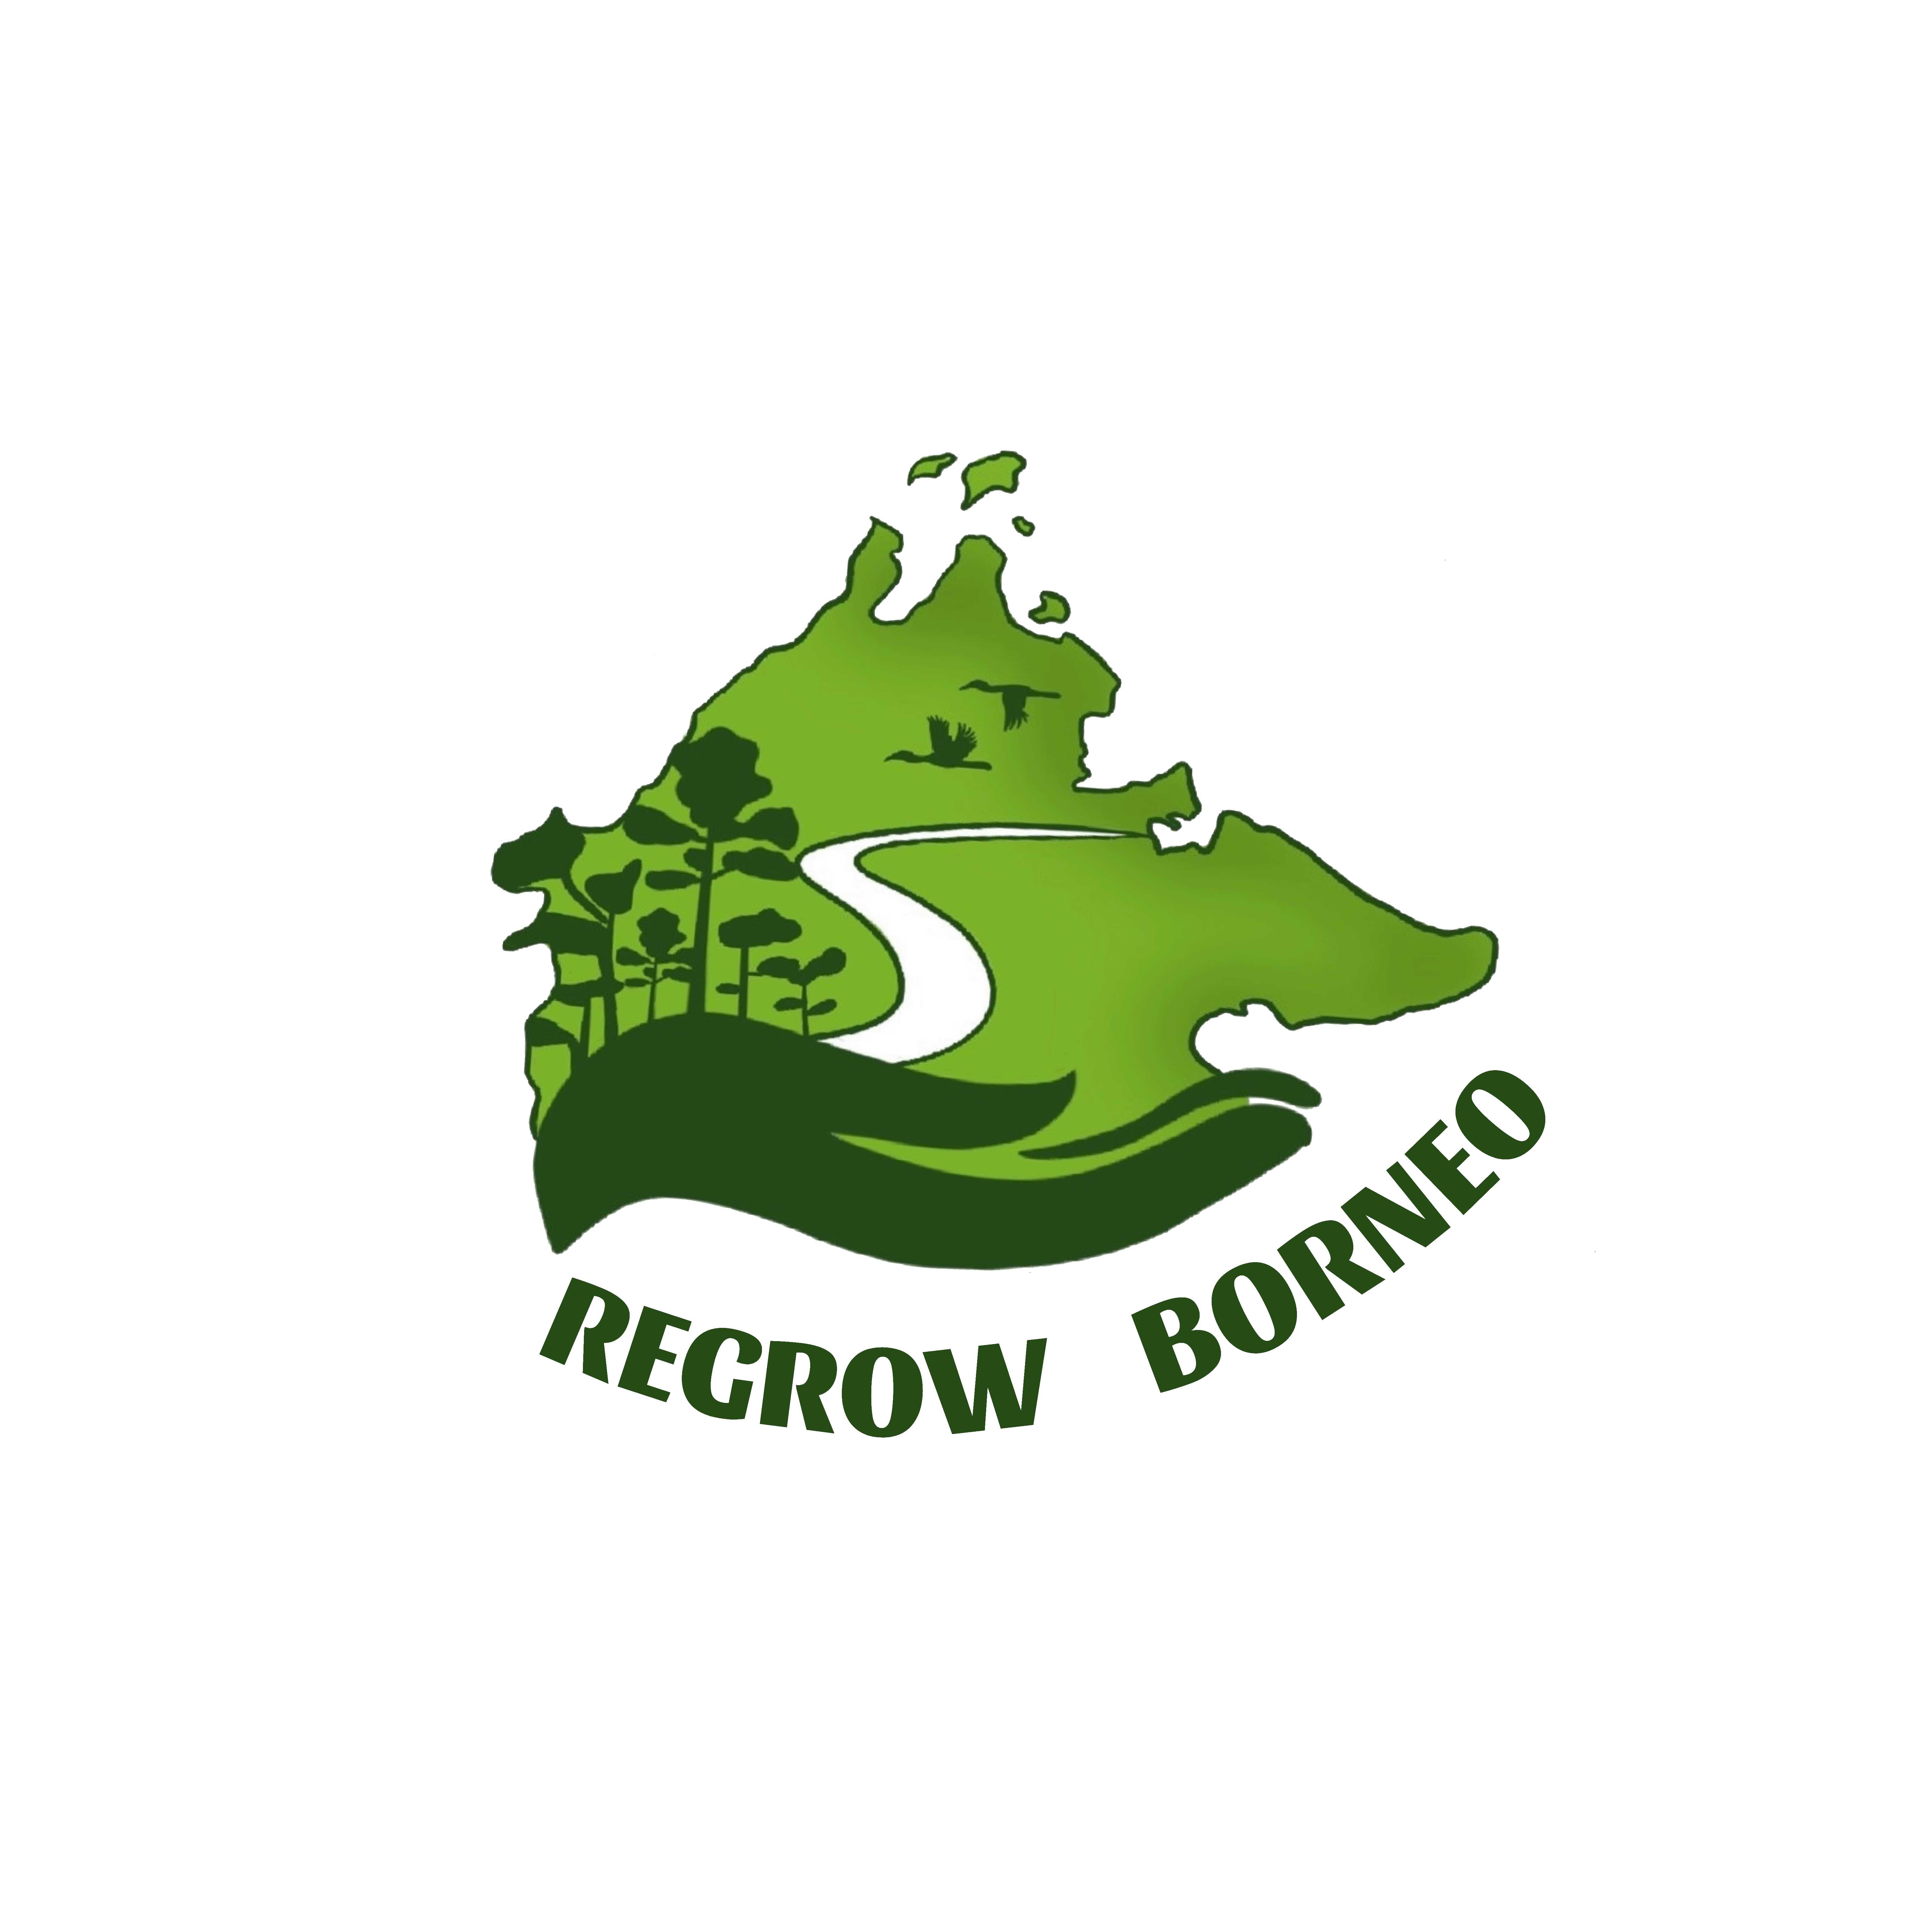 Regrow Borneo logo